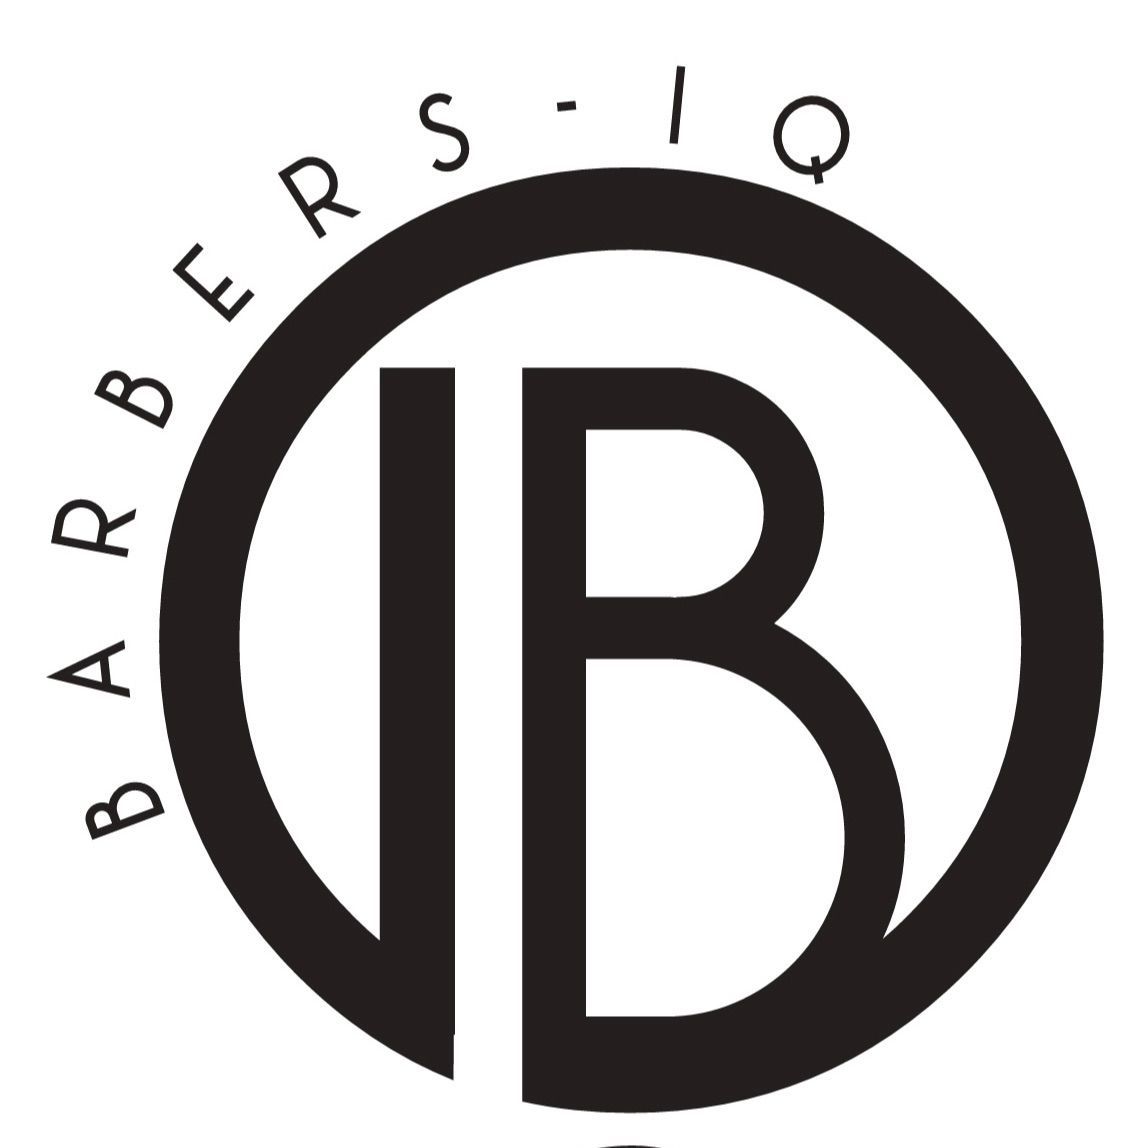 BarbersIQ, 3600 sisk road modesto, 5A, Modesto, 95356